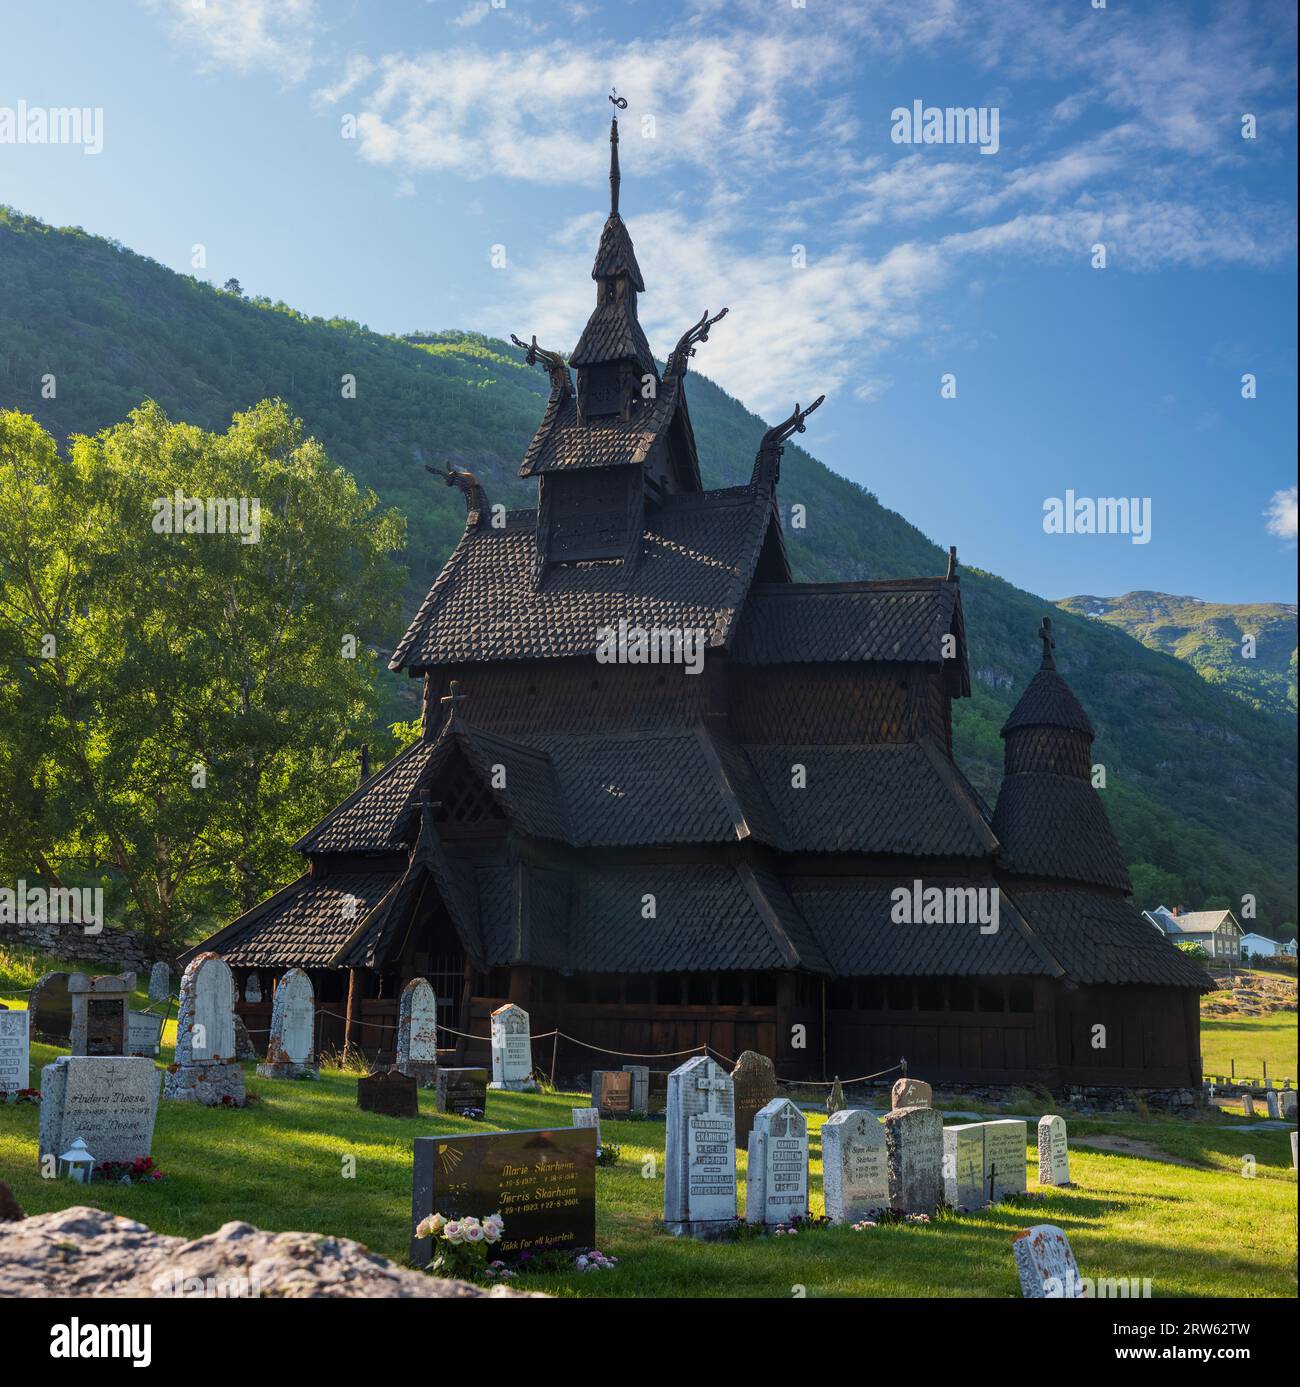 La chiesa restaurata di Borgund Stave, situata nella contea di Vestland, in Norvegia, fu costruita circa 800 anni fa. La chiesa viene fotografata in una sera d'estate Foto Stock